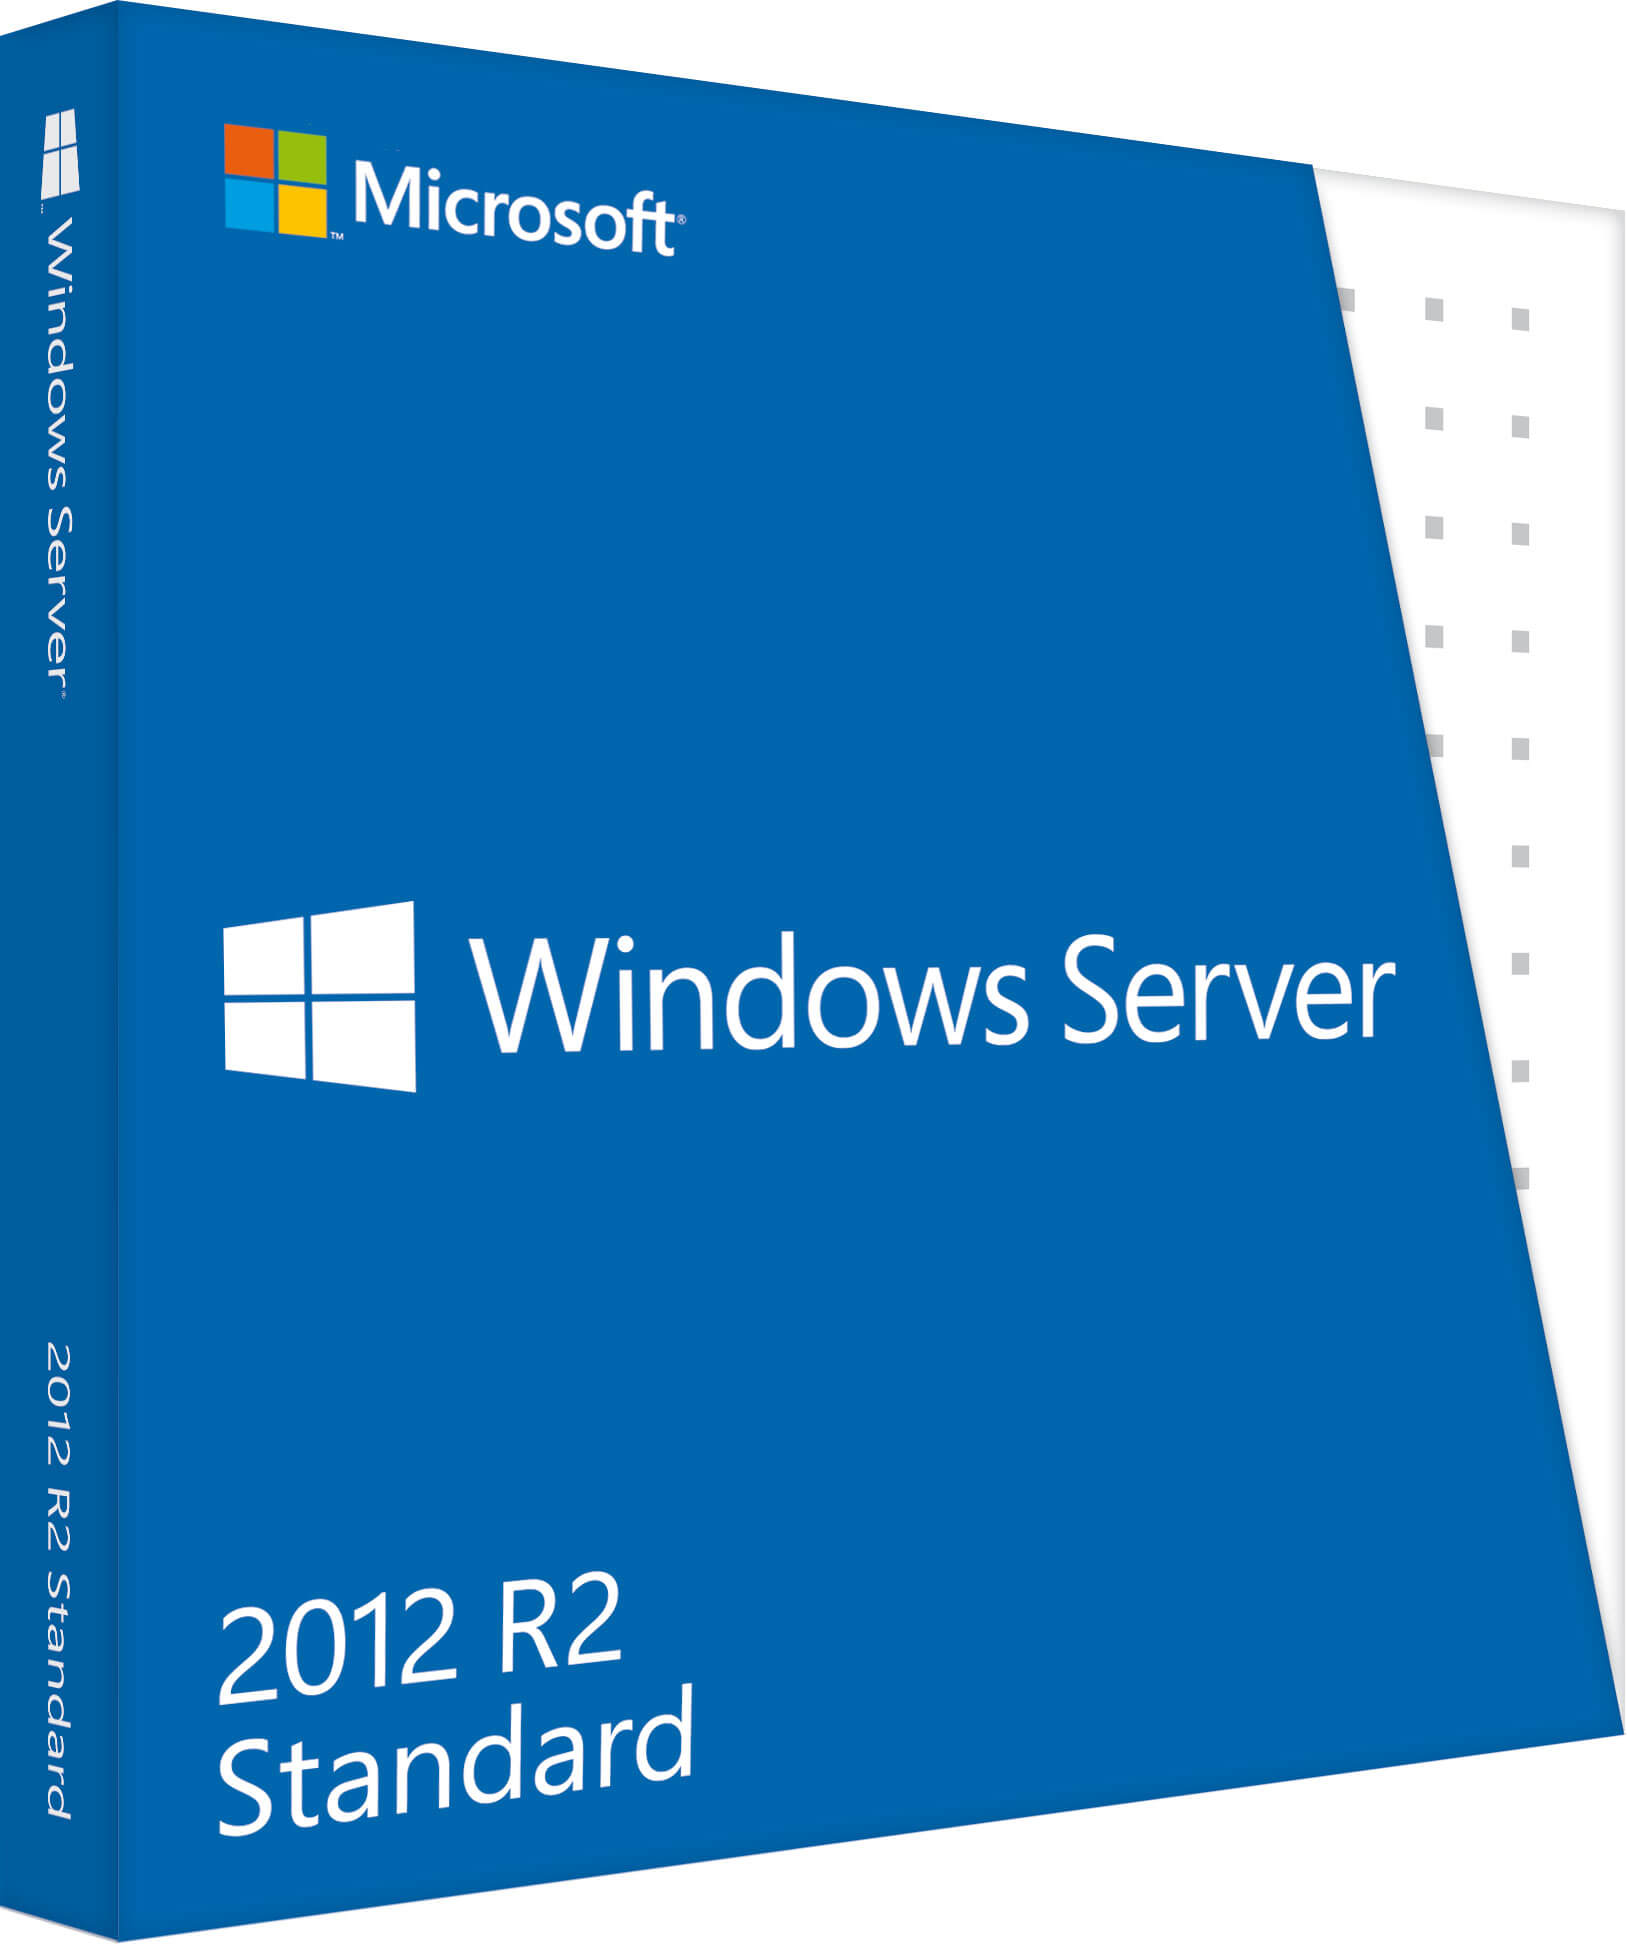 Скачать windows server 2012R2 со всеми обновлениями по март 2015 года